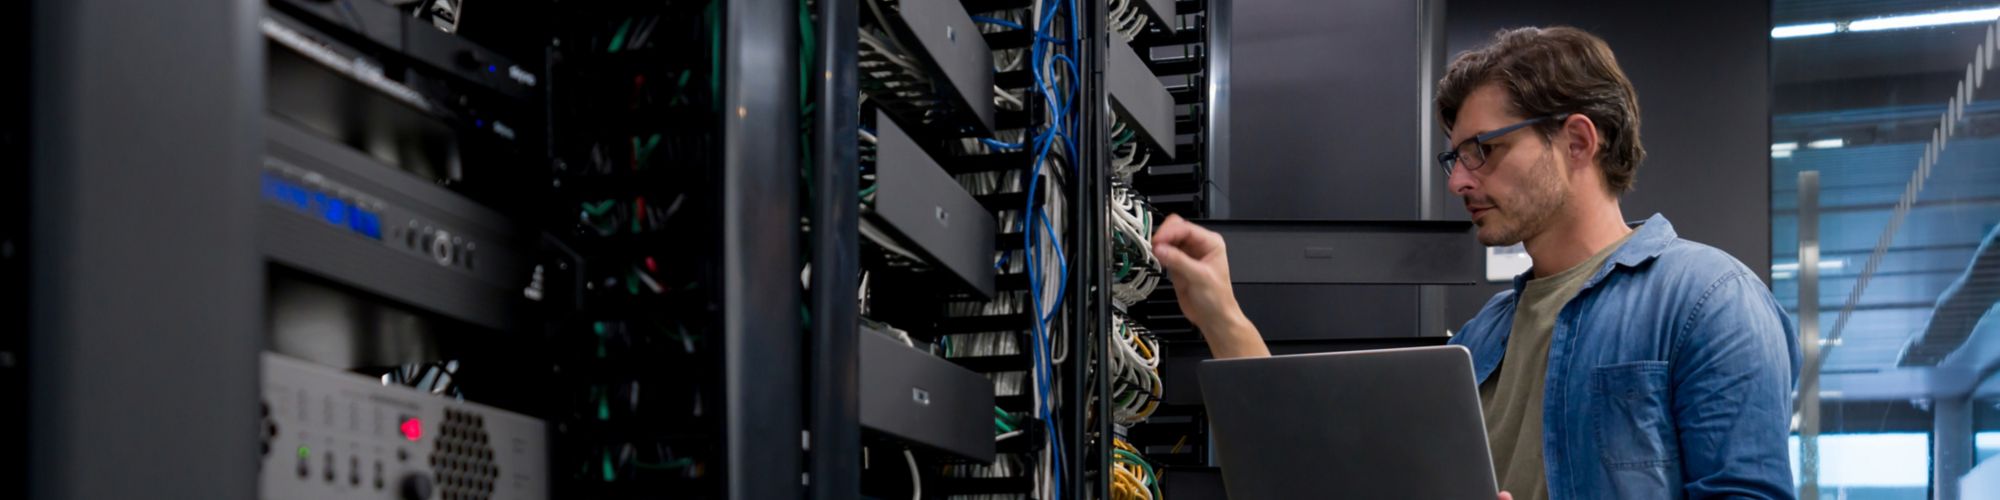 Técnico de soporte de TI que arregla un servidor de red en una oficina